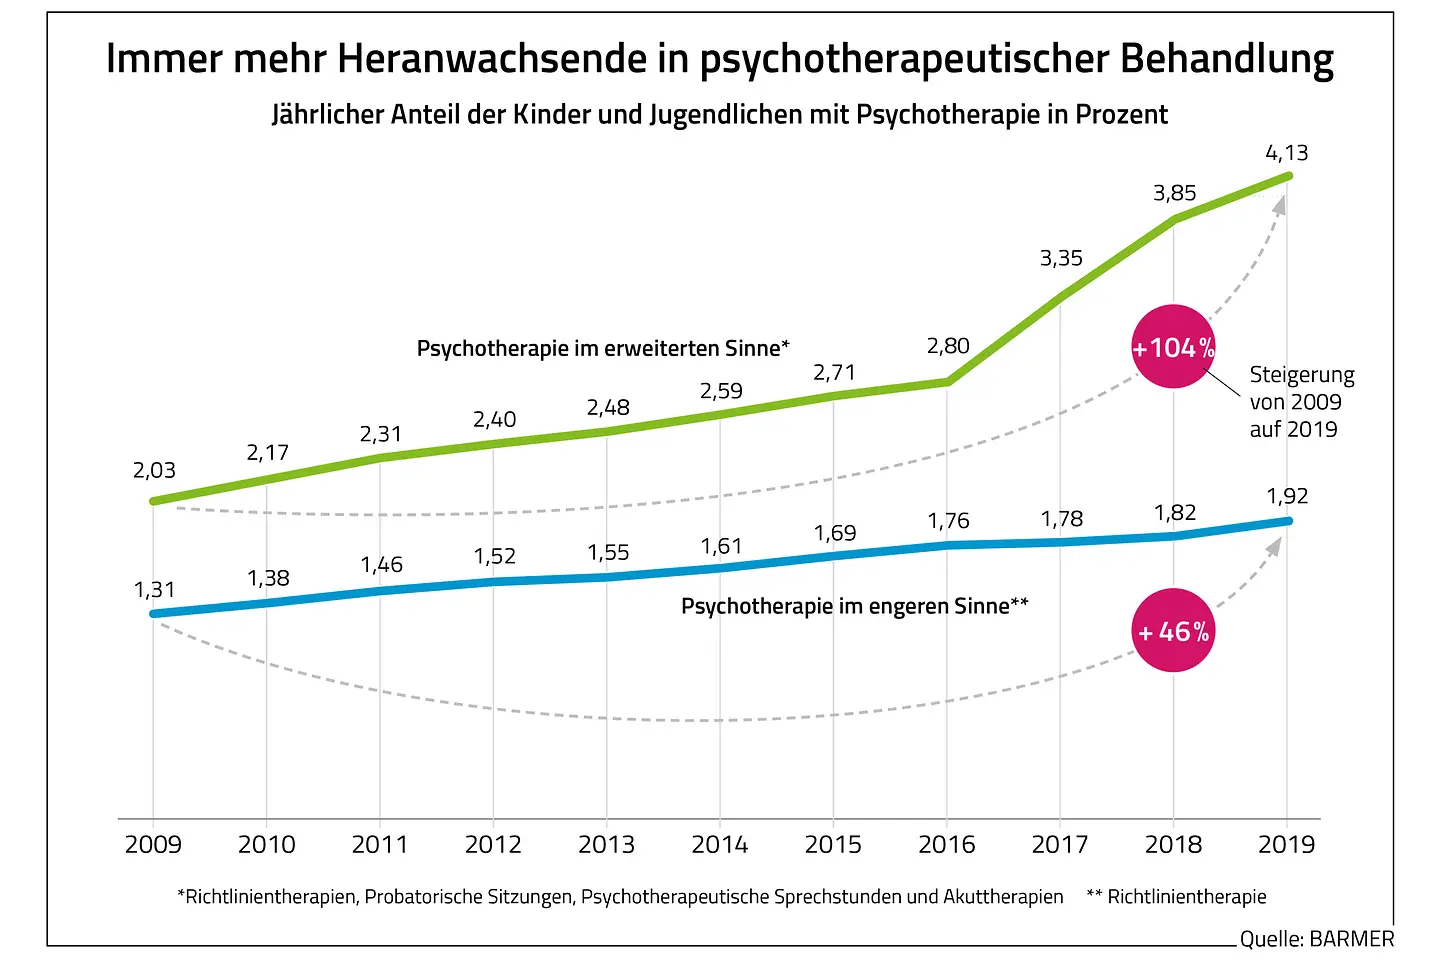 Die Grafik zeigt den jährlichen Anteil der Kinder und Jugendlichen mit Psychotherapie in Prozent.